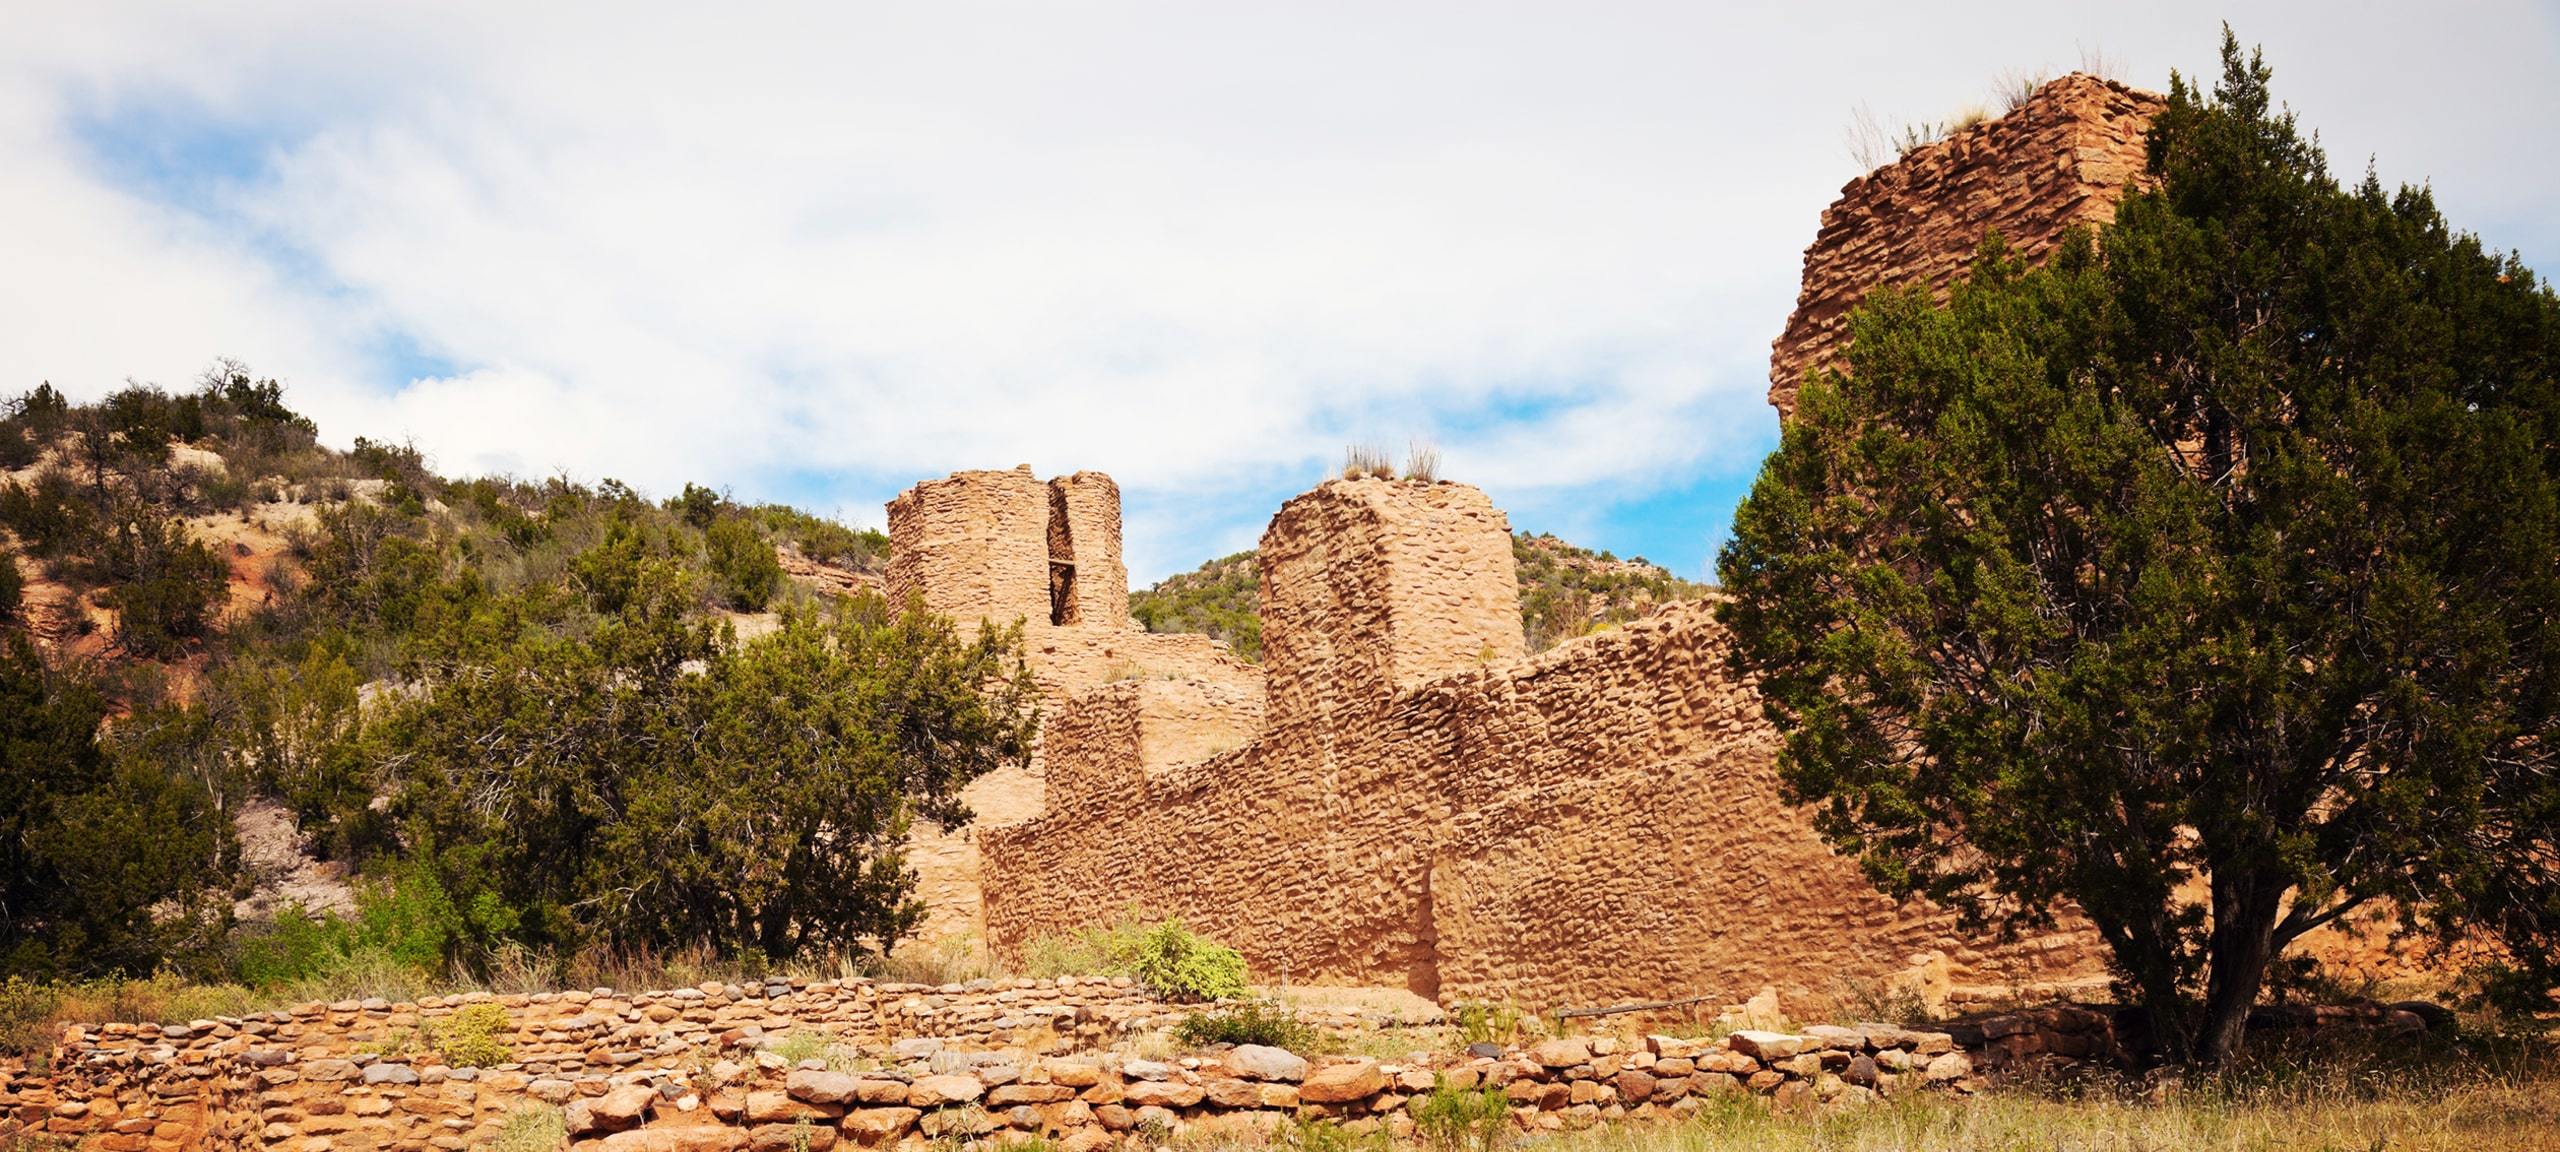 Historic ruins in Jemez Springs, New Mexico